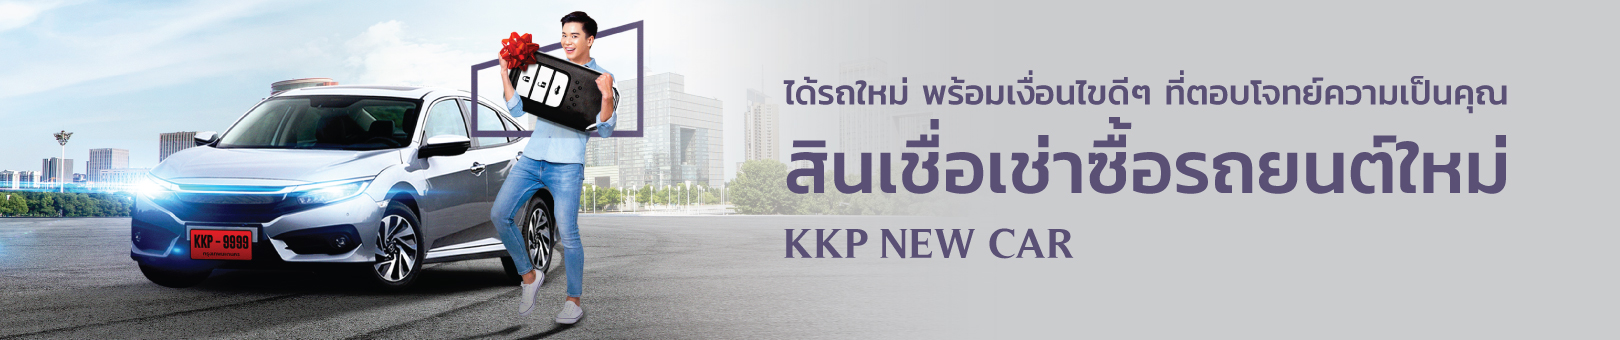 KKP-HP-new-car-1620x340p-23-Feb-2021